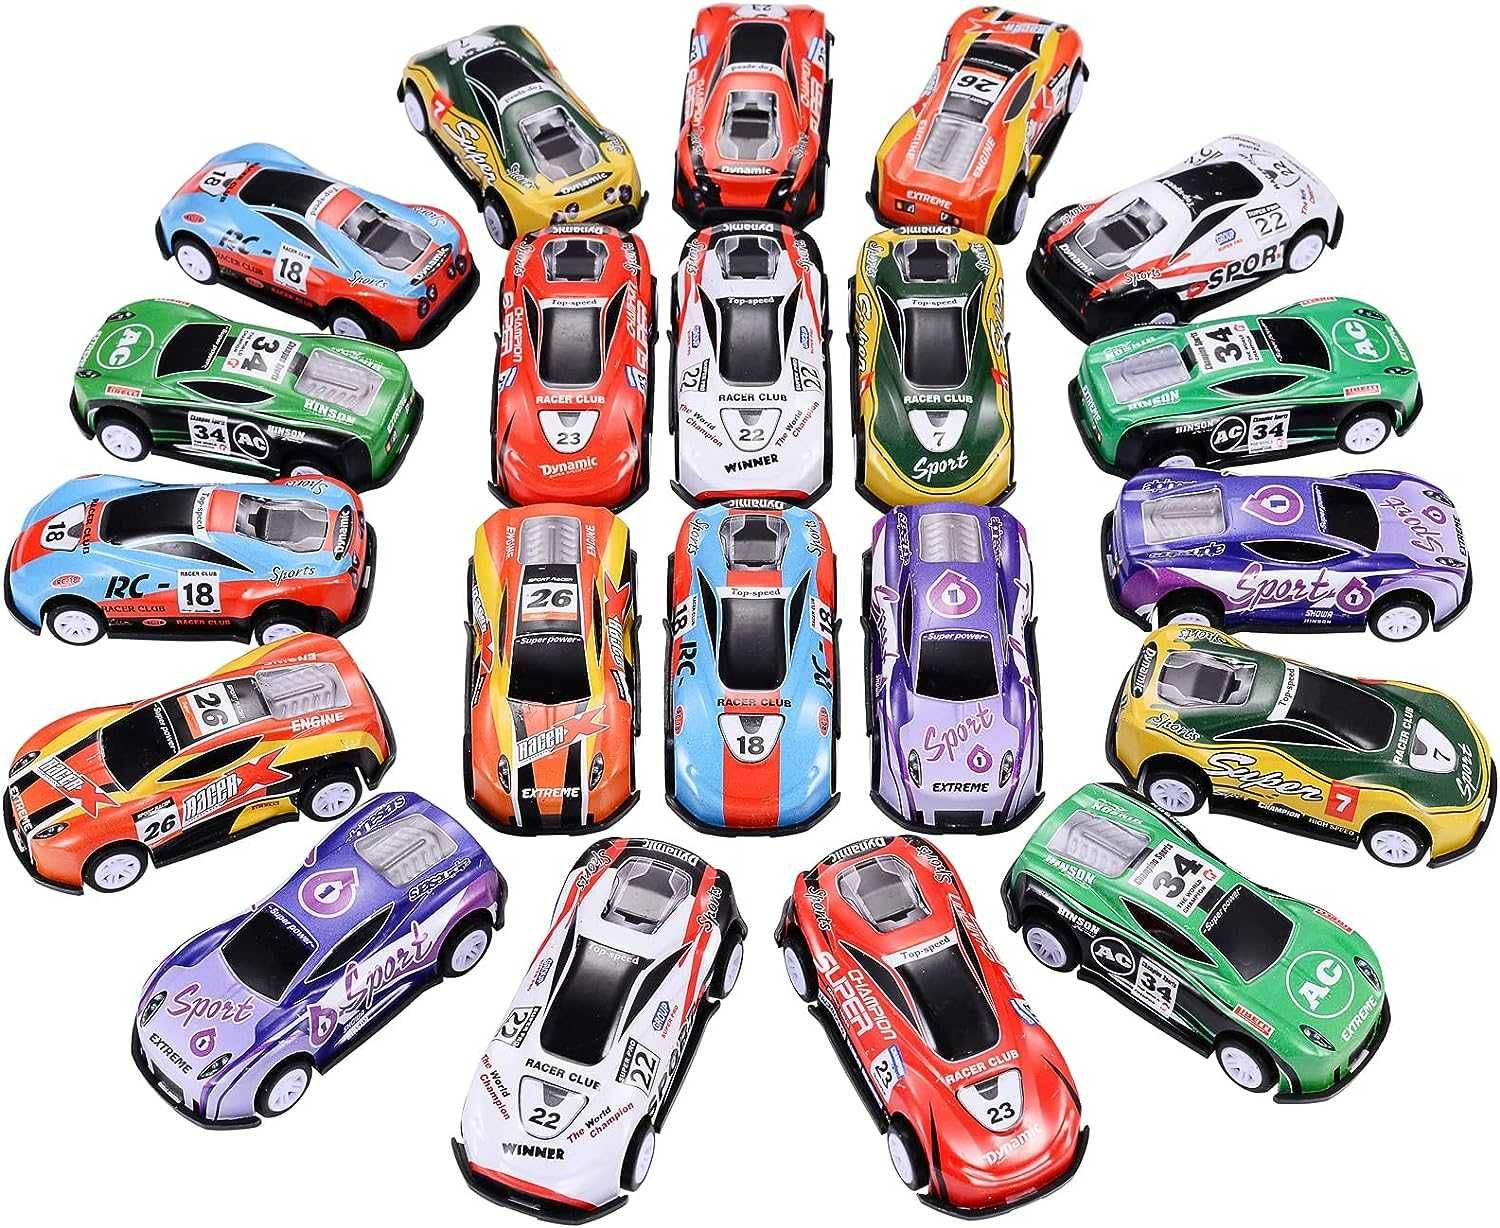 Игрушечный набор моделей автомобилей - 21 шт (возраст 3+)